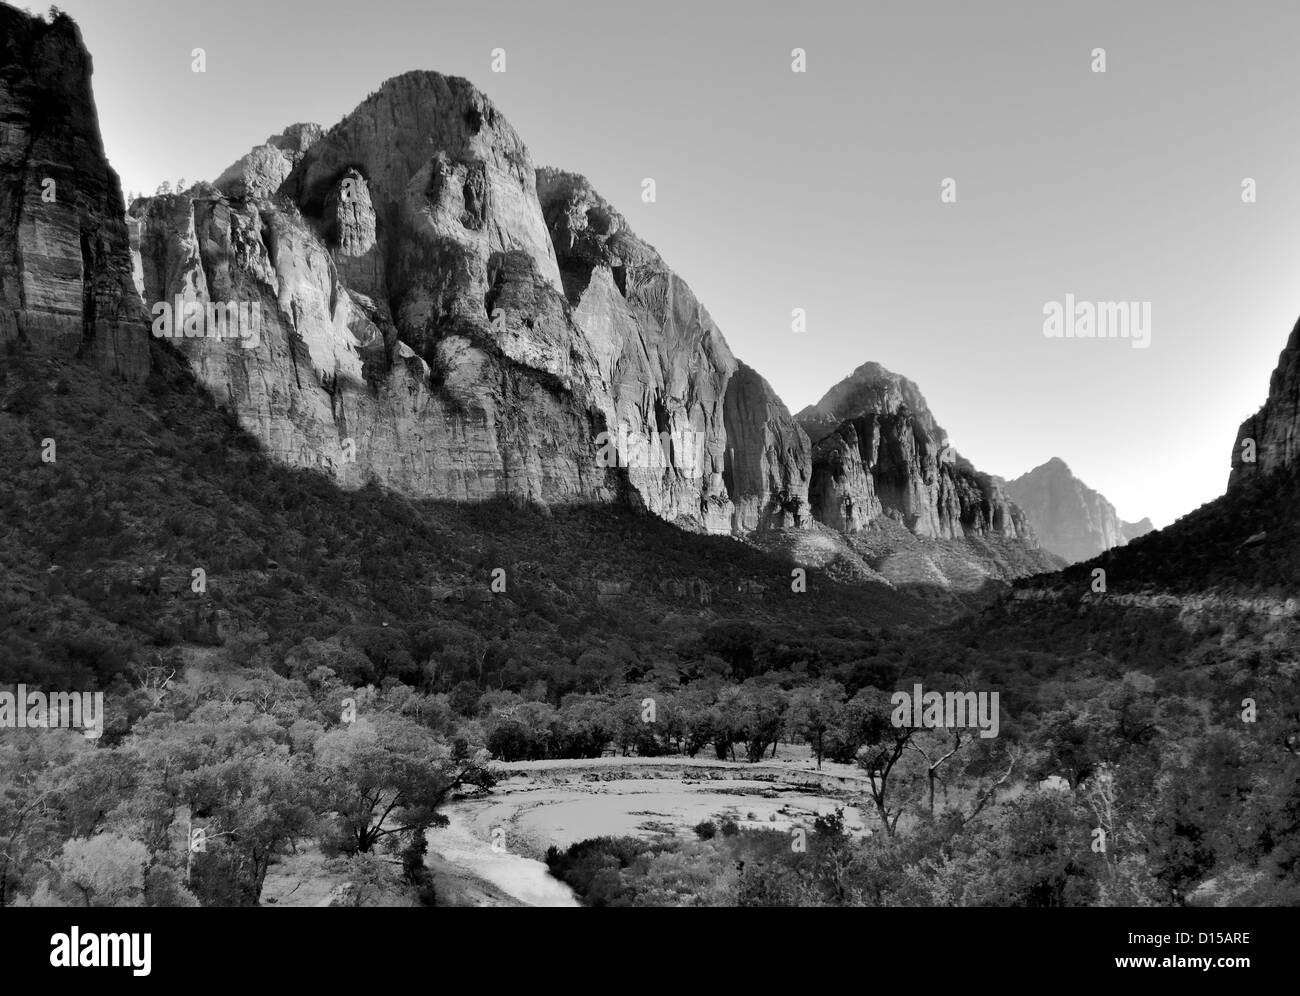 'The Watchman' Zion National Park - Utah, USA il fiume Virgin si snoda attraverso la valle, immagine in bianco e nero Foto Stock